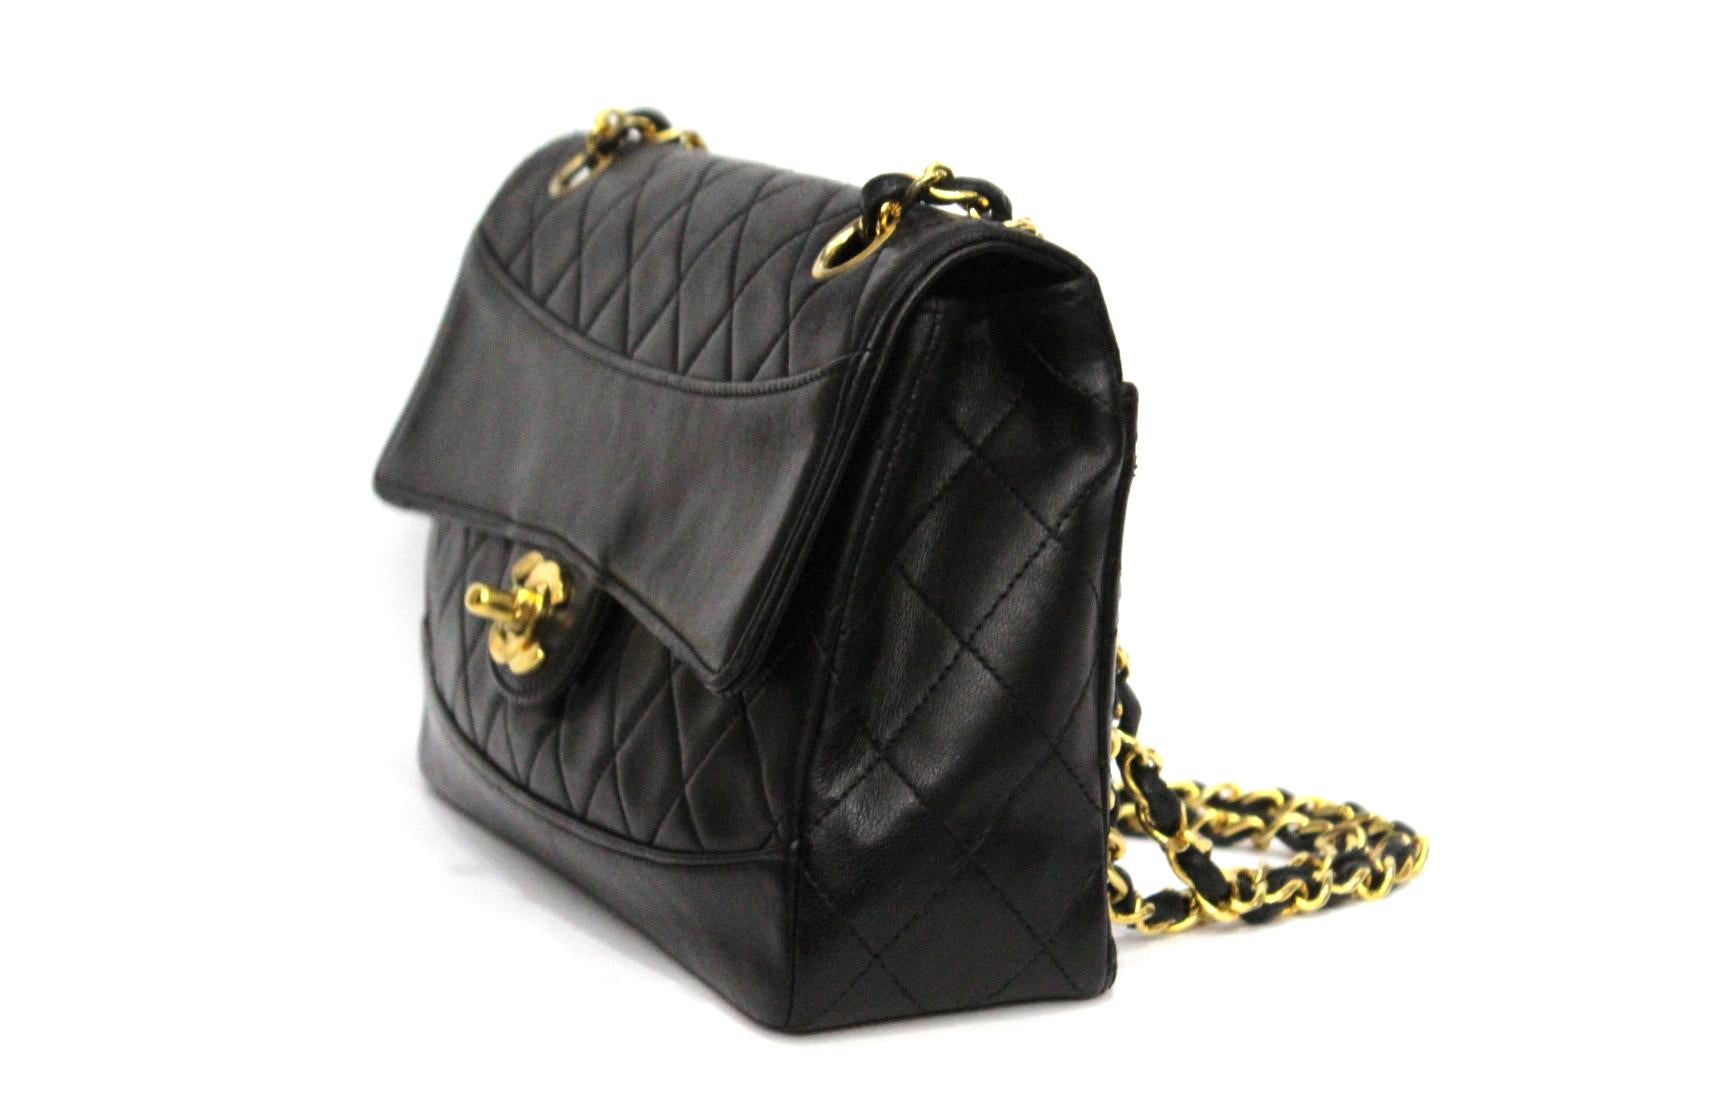 Chanel Vintage Single Flap Bag
Black color
Gold hardware 